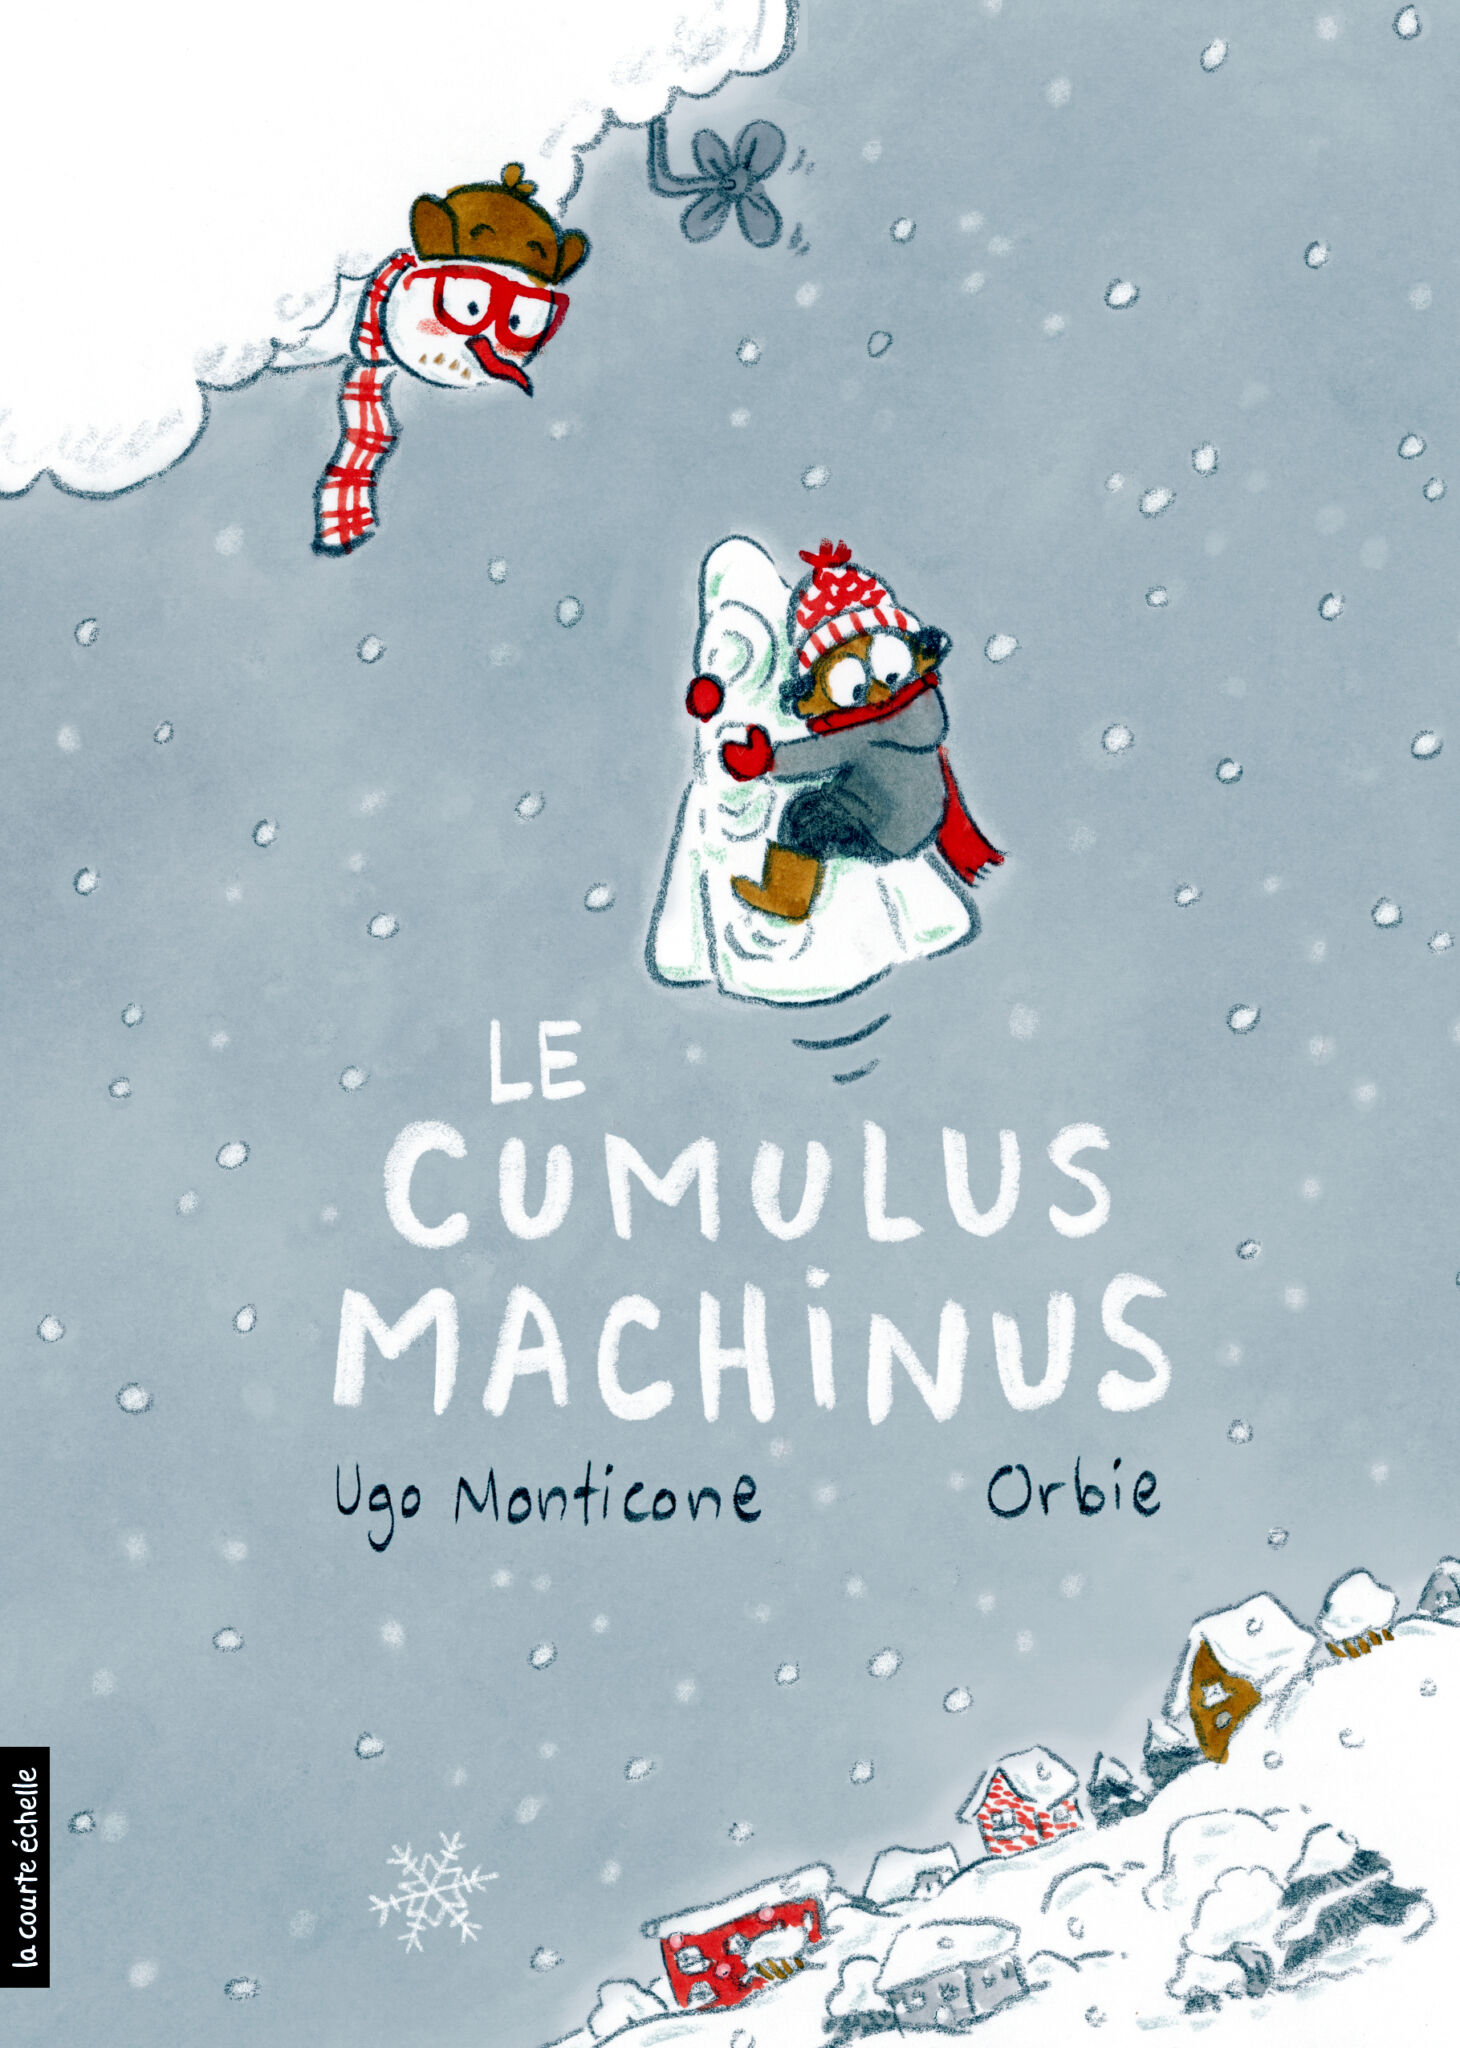 Ugo Monticone/Le Cumulus Machinus